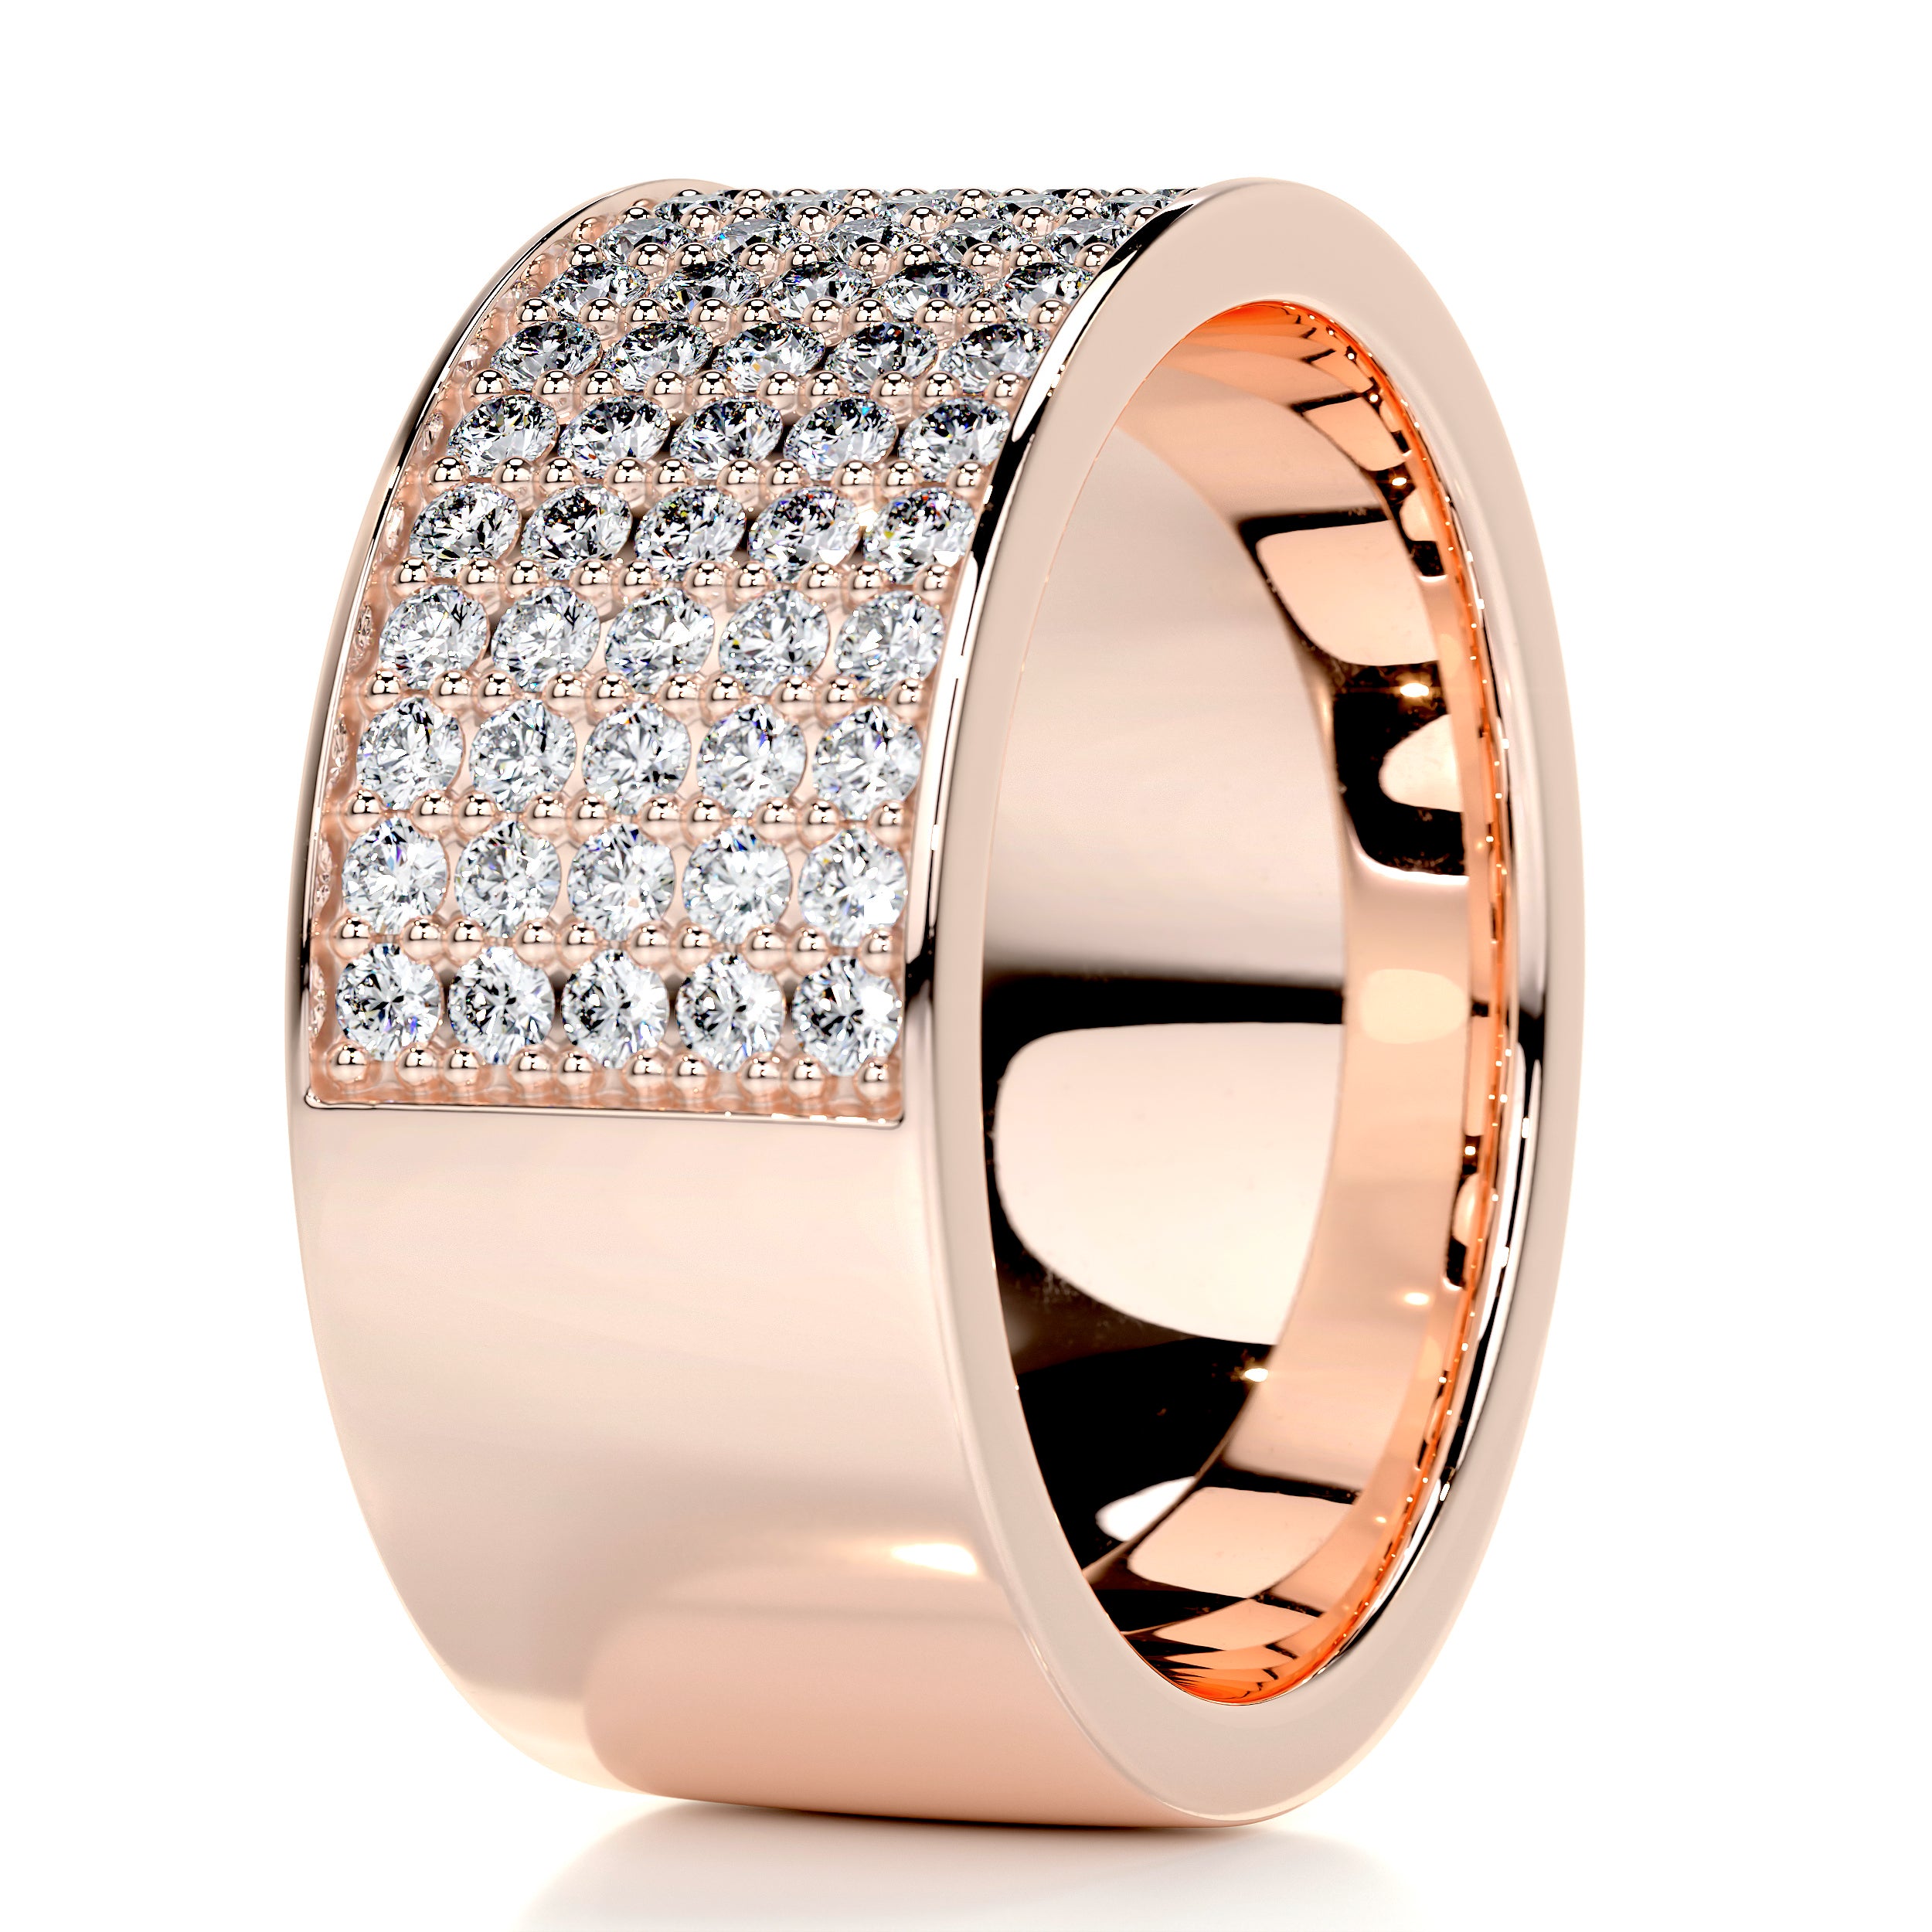 June Diamond Wedding Ring   (1 Carat) -14K Rose Gold